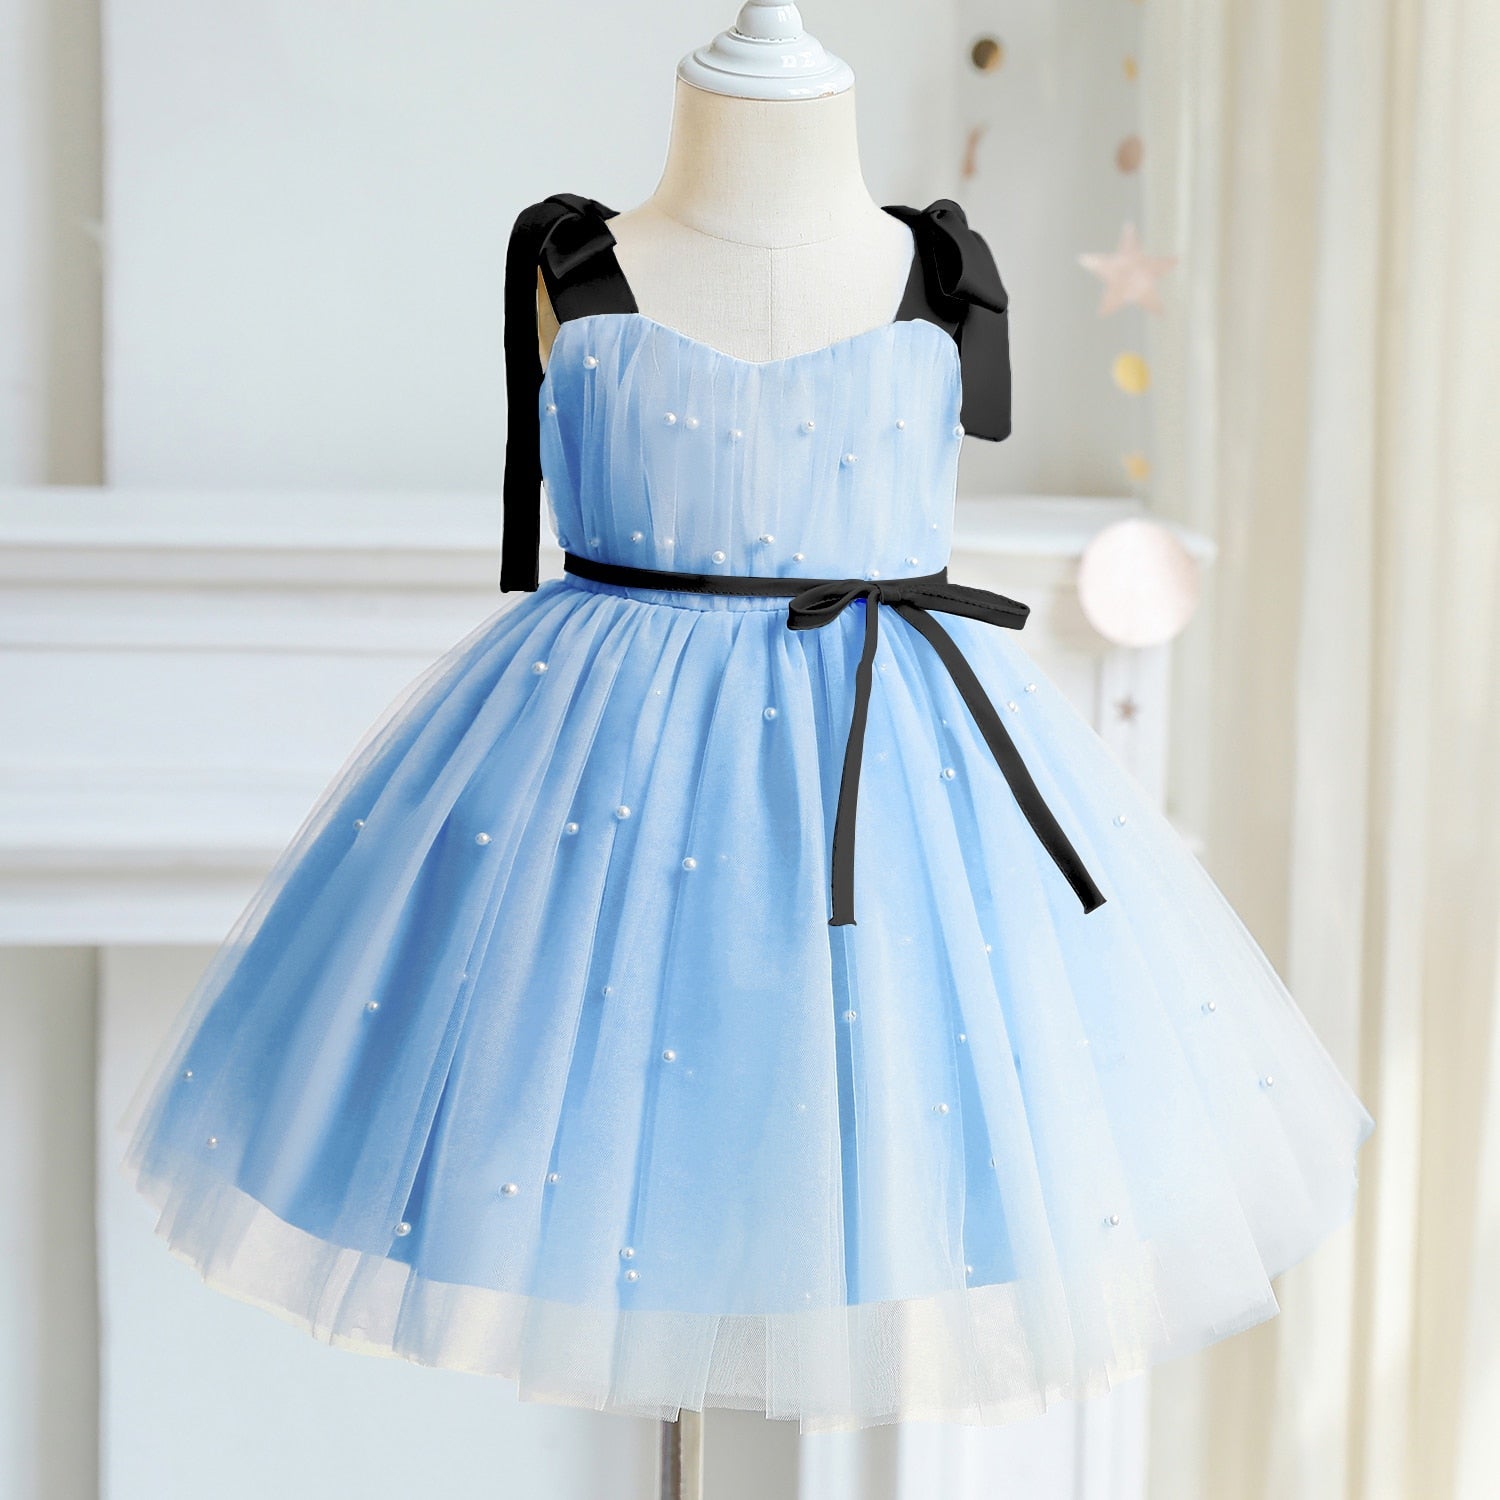 Vestido de Festa Infantil Fitas e Pérola vestido de festa Loja Click Certo Azul 9-12 meses 51cm 